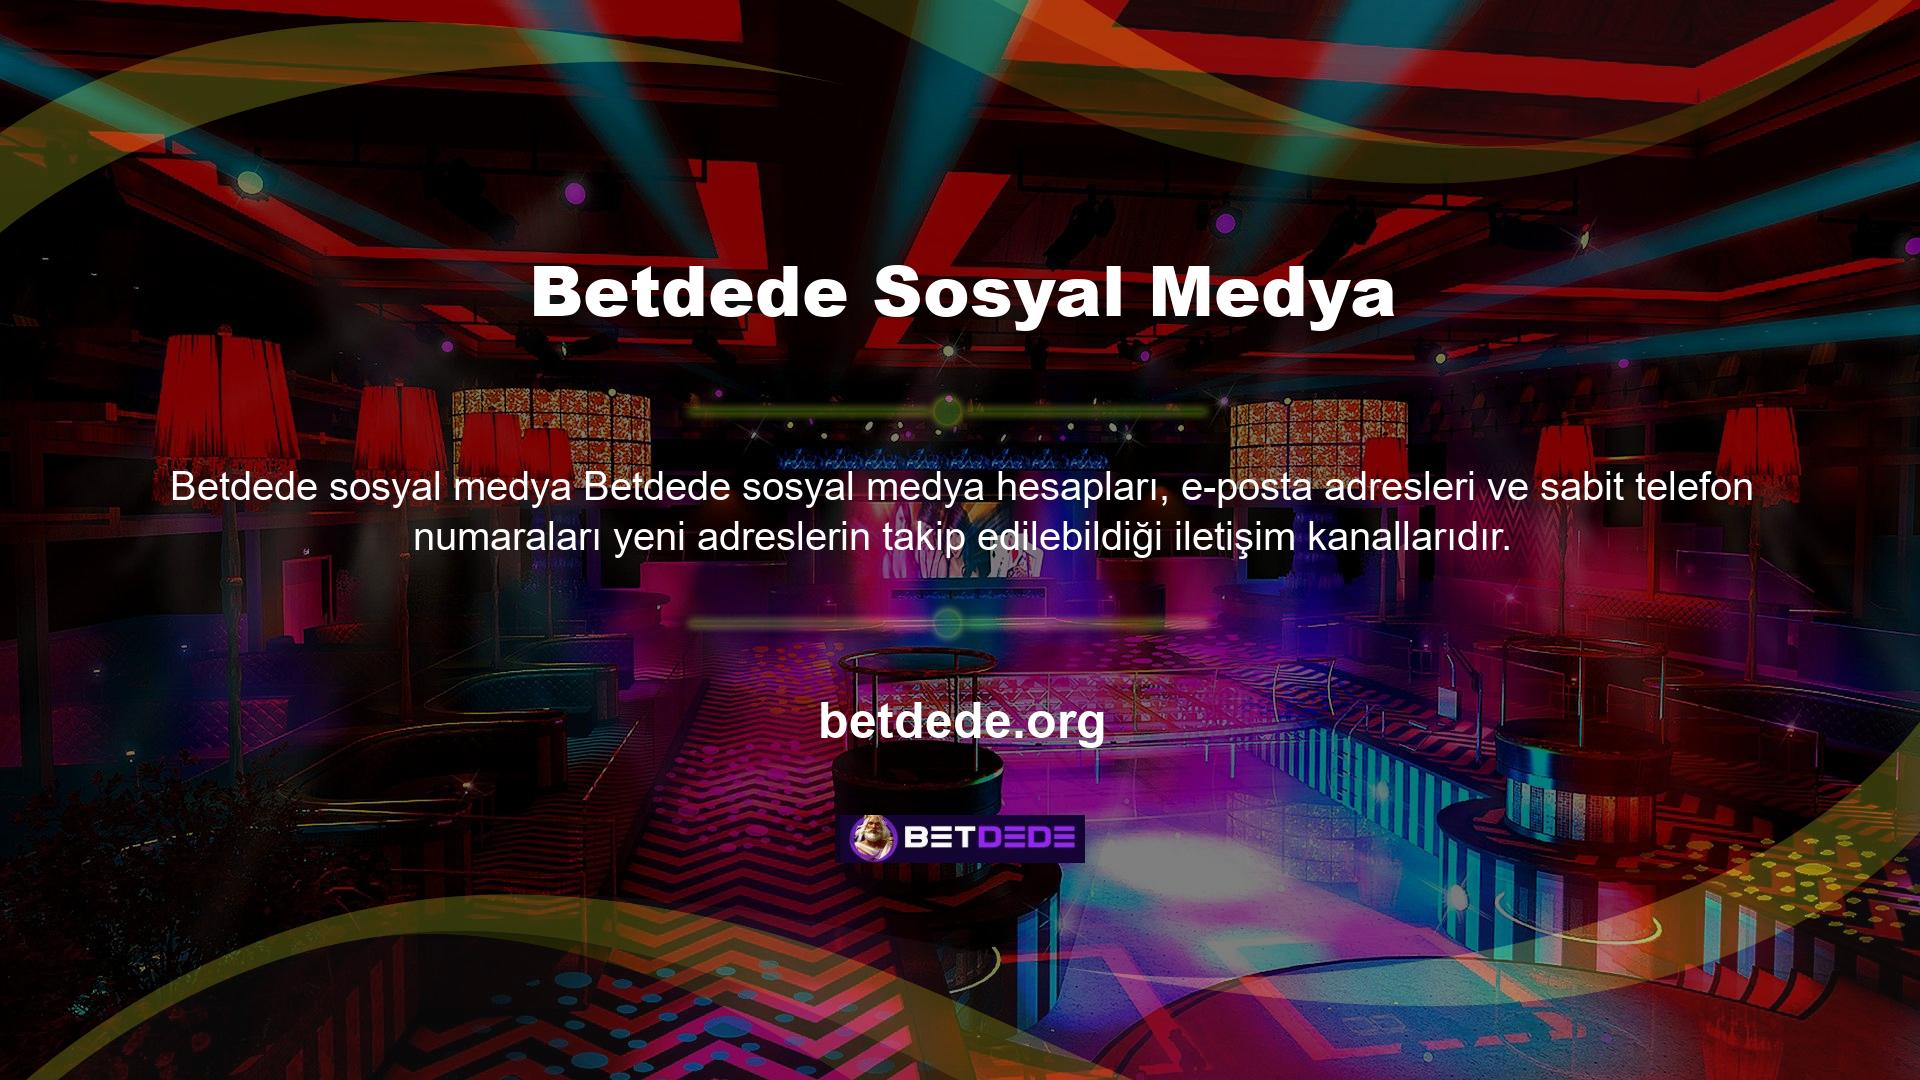 Betdede, kurulduğu günden bu yana üyeleri için hızlı ve güvenilir giriş URL'leri sağlayan lider sağlayıcılardan biri olmuştur